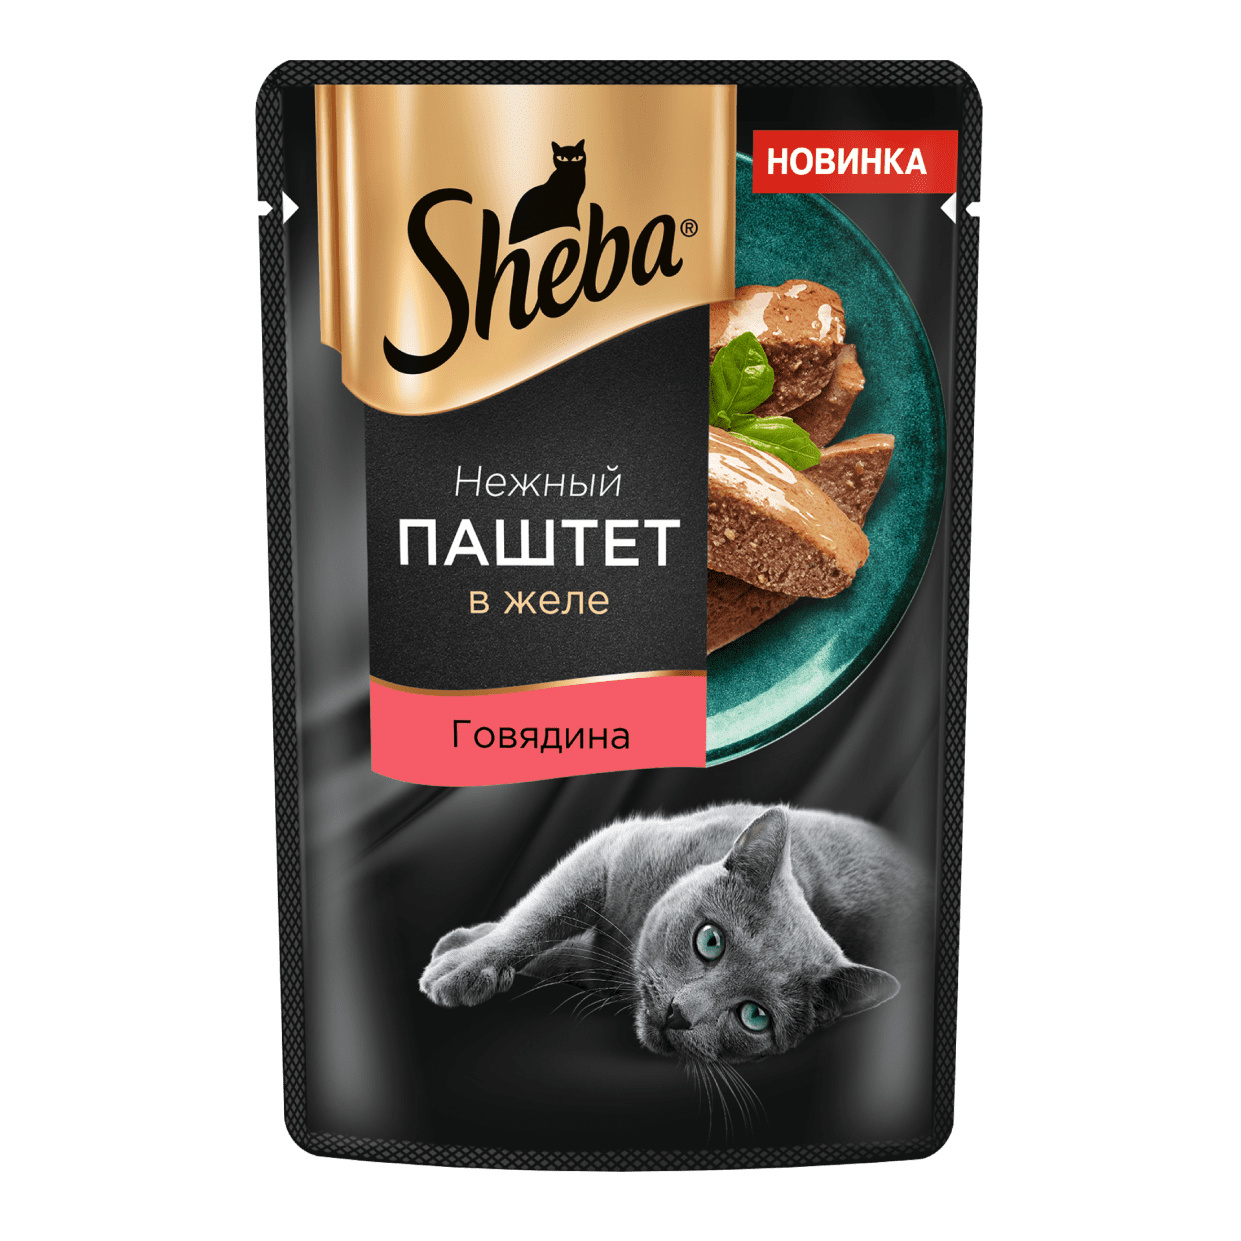 Sheba Sheba влажный корм для кошек Нежный паштет в желе, с говядиной (75 г) паштет пражский главпродукт 100 г